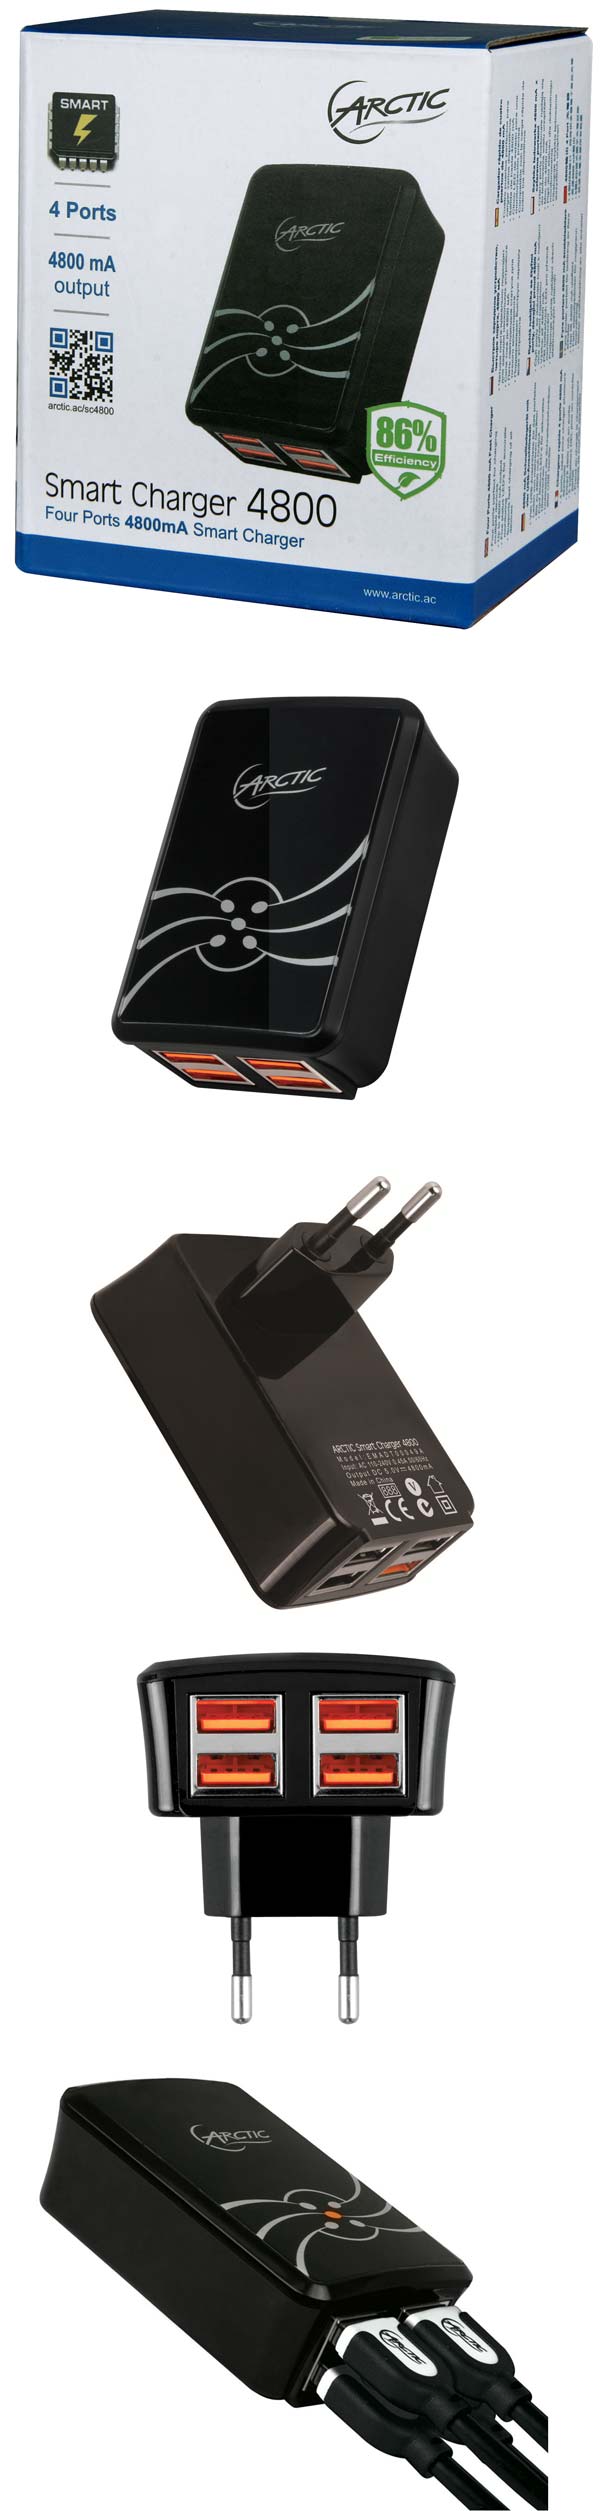 Зарядное устройство Smart Charger 4800 от ARCTIC